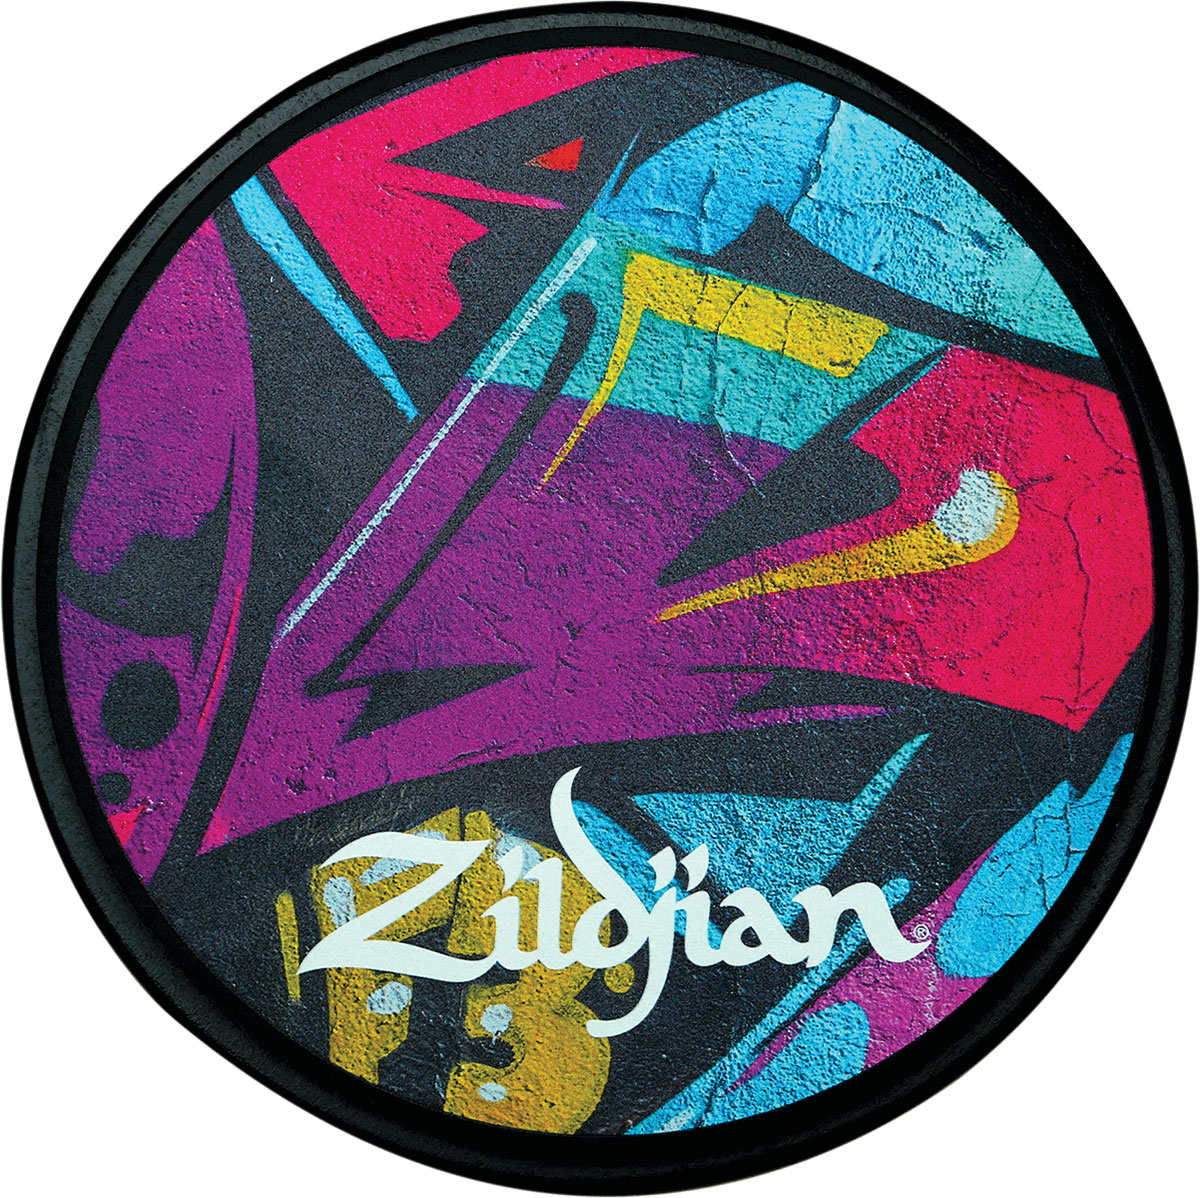 ZILDJIAN ACCESSORIES ZXPPGRA06- PAD D'ENTRAINEMENT 06